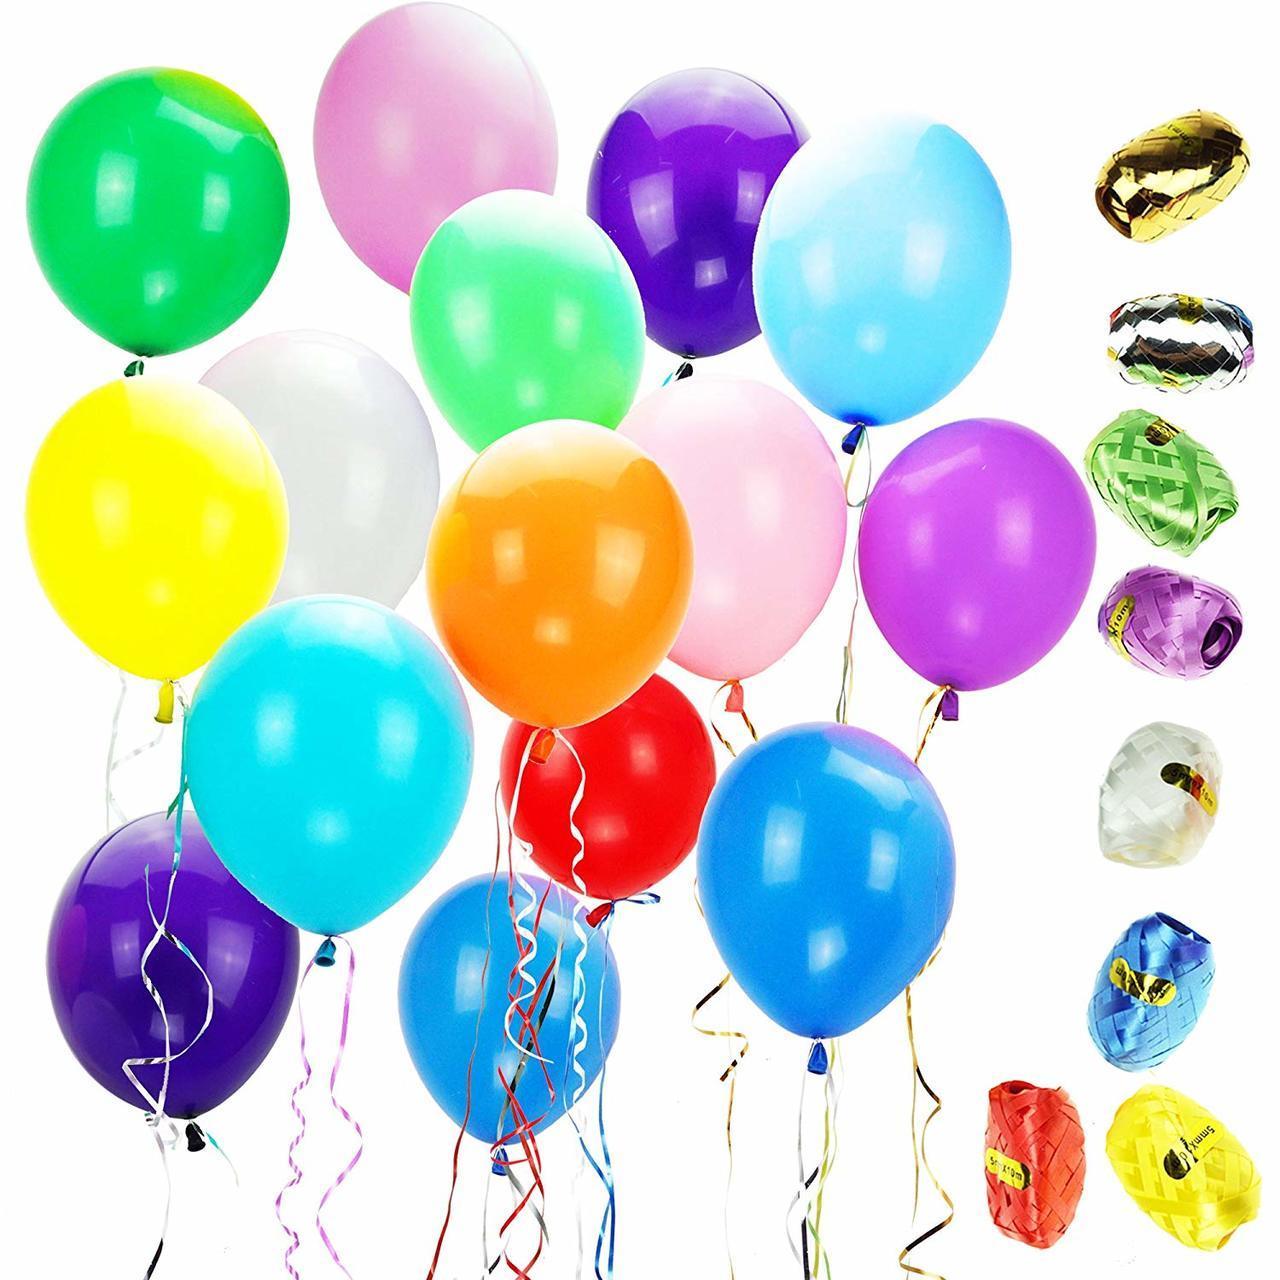 12″ Latex Balloons With 10 Bonus Colorful Ribbons, 100 Pcs